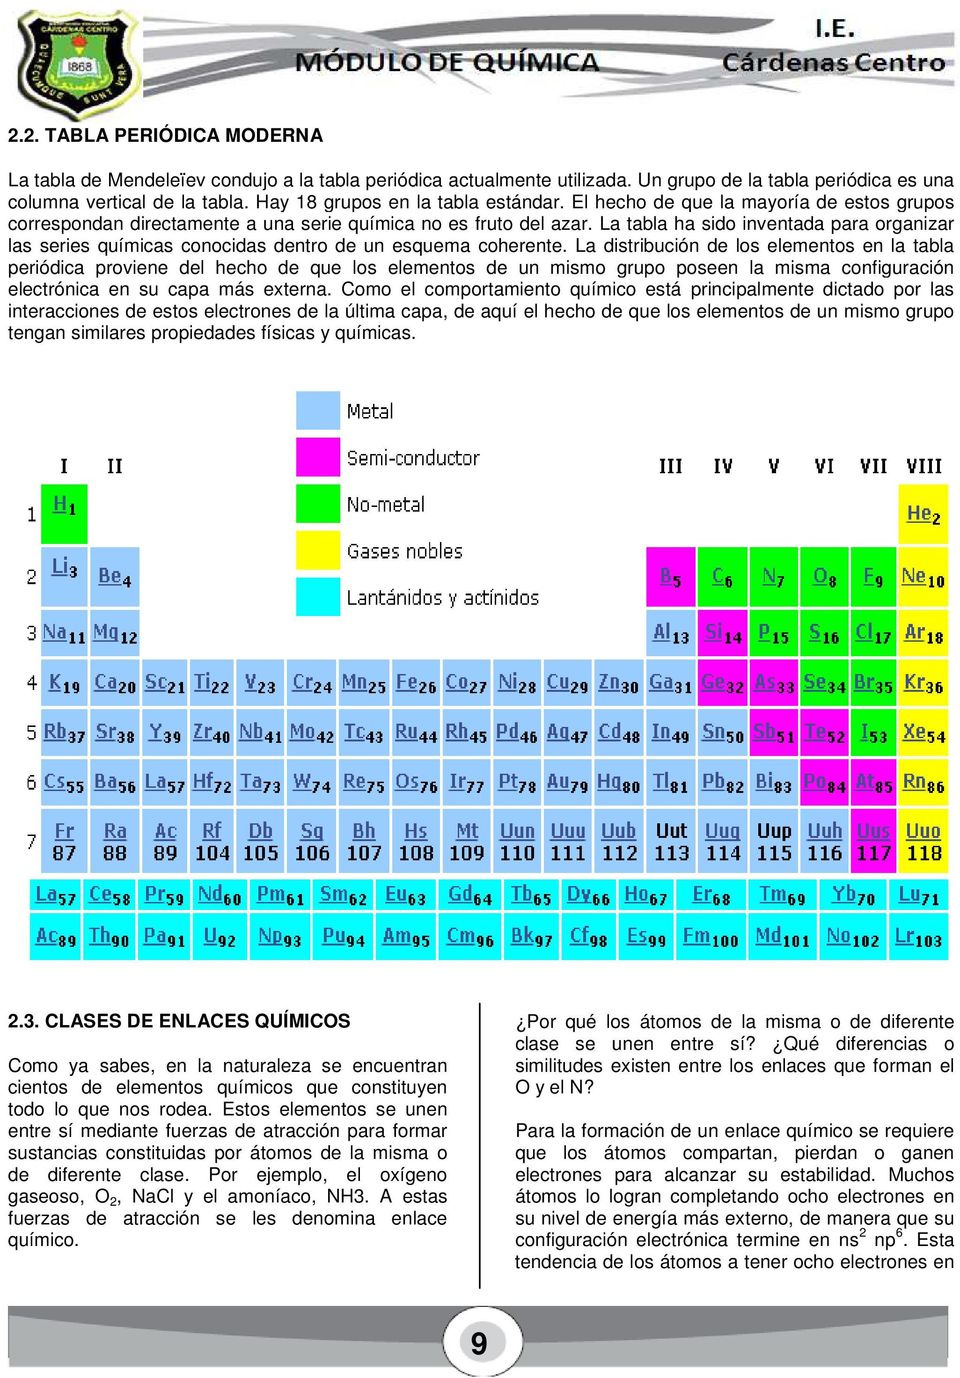 La tabla ha sido inventada para organizar las series químicas conocidas dentro de un esquema coherente.